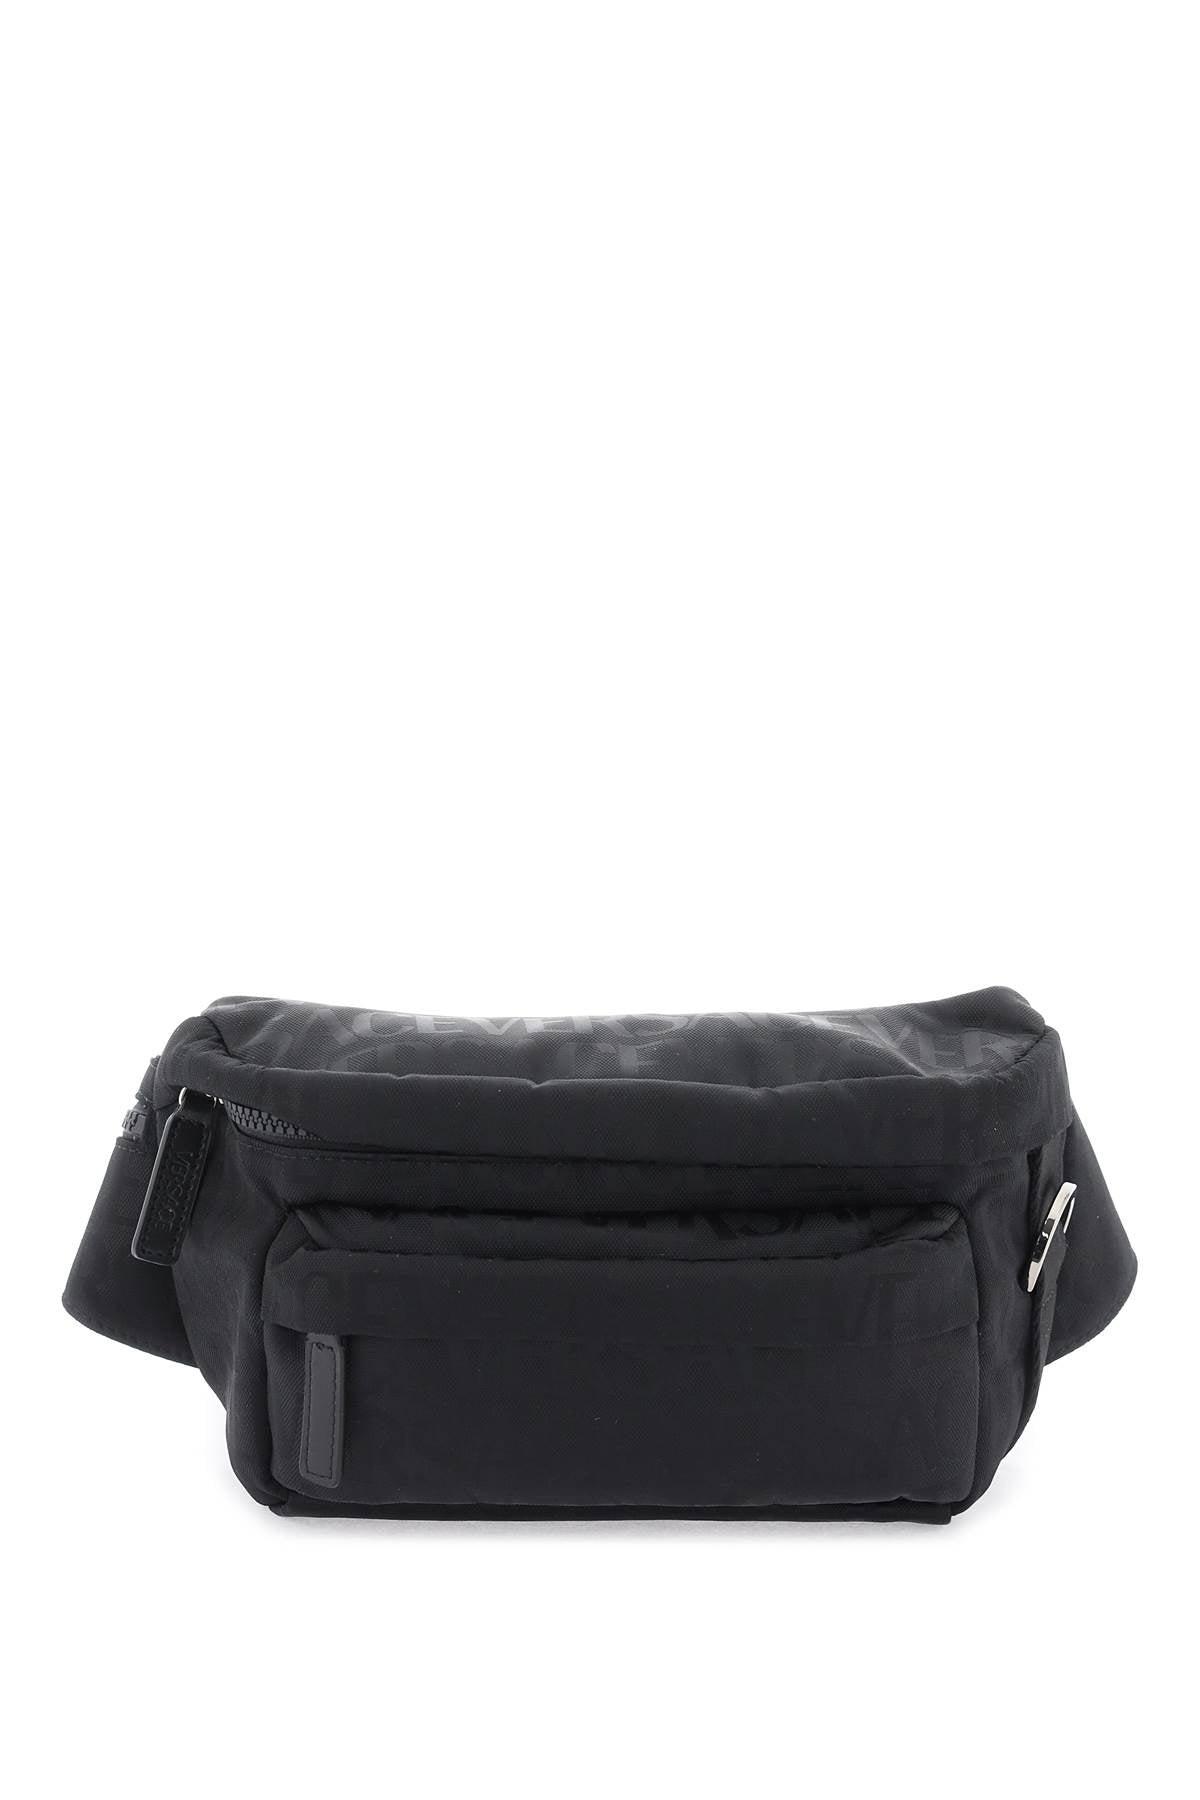 Sleek and Sophisticated Black Belt Bag for Men